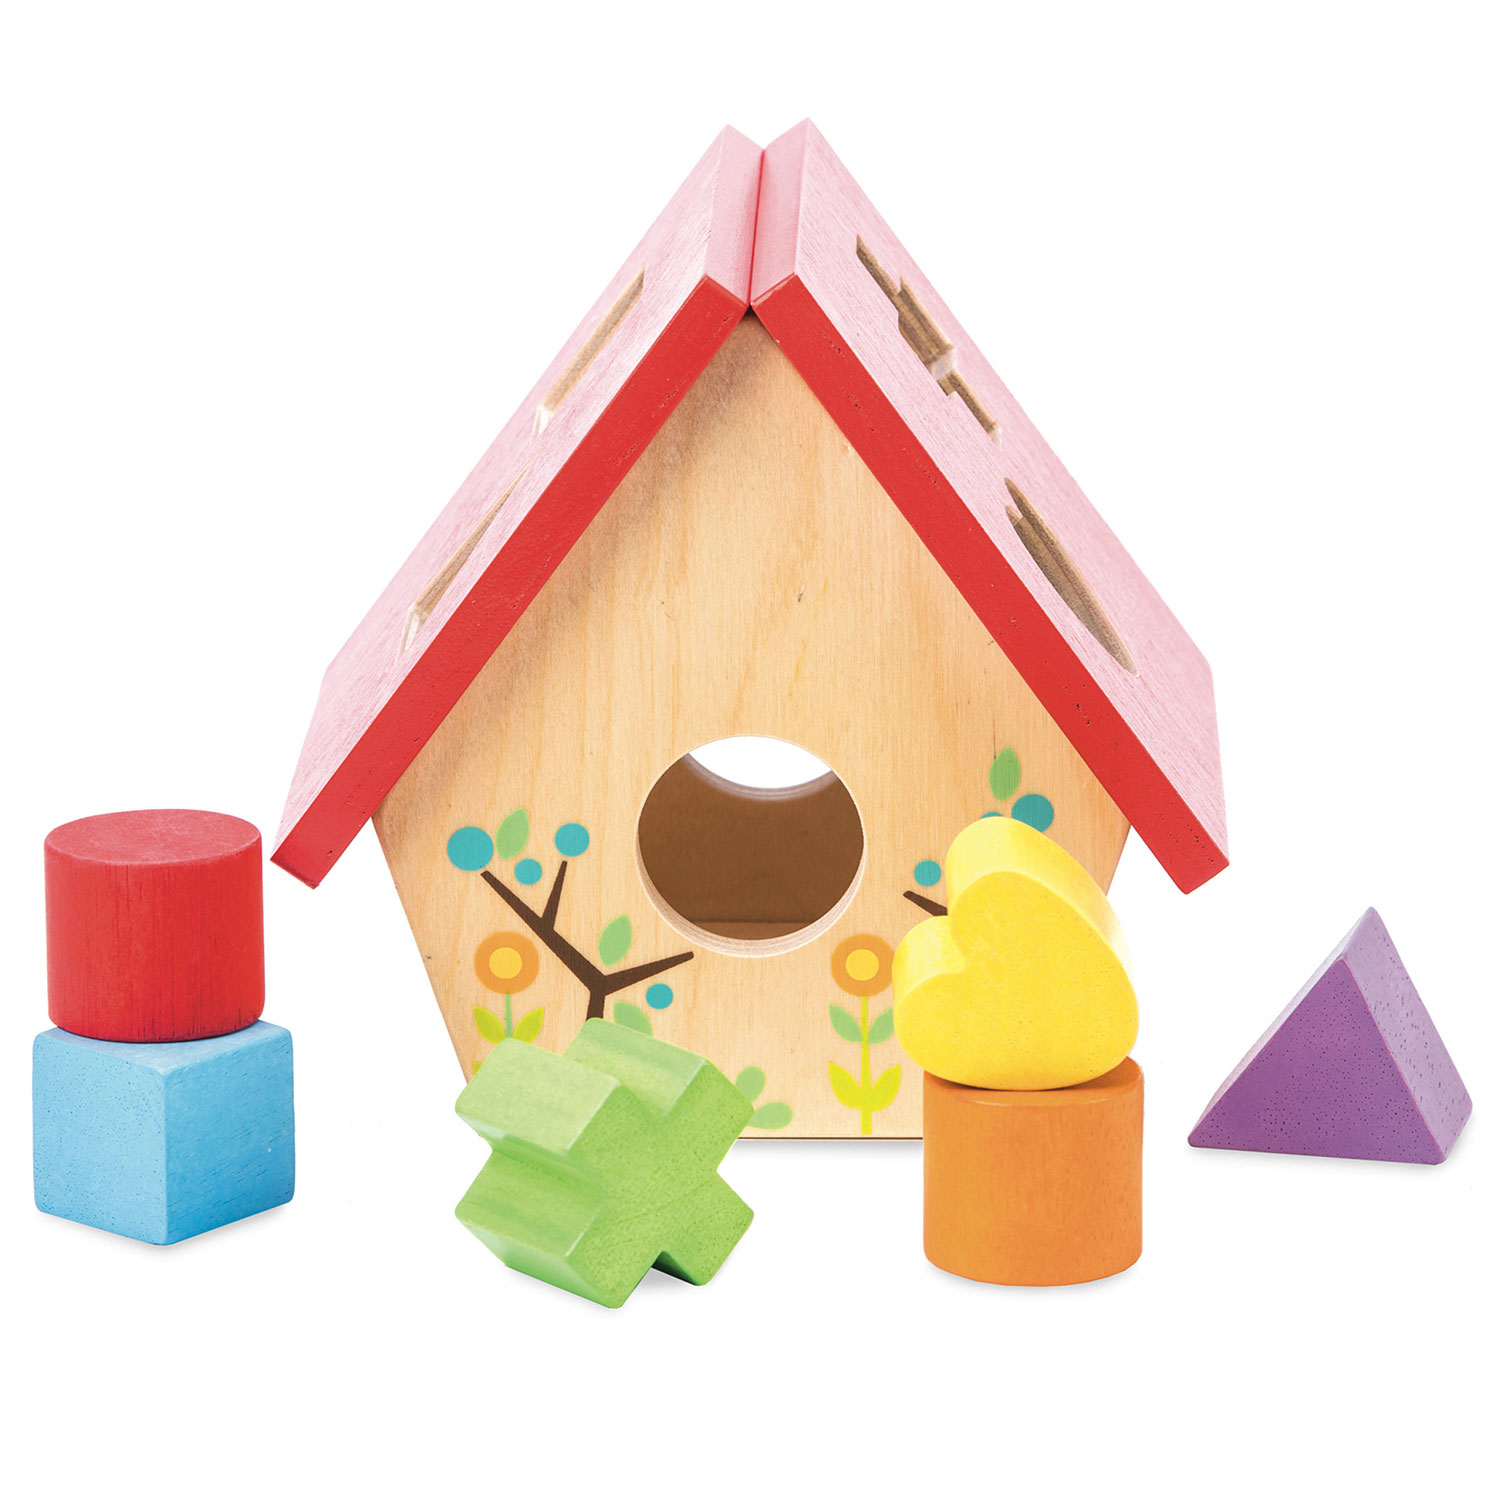 Mein kleines Vogelhaus - Formen Sortierspiel / Woodland Bird House Shape Sorter